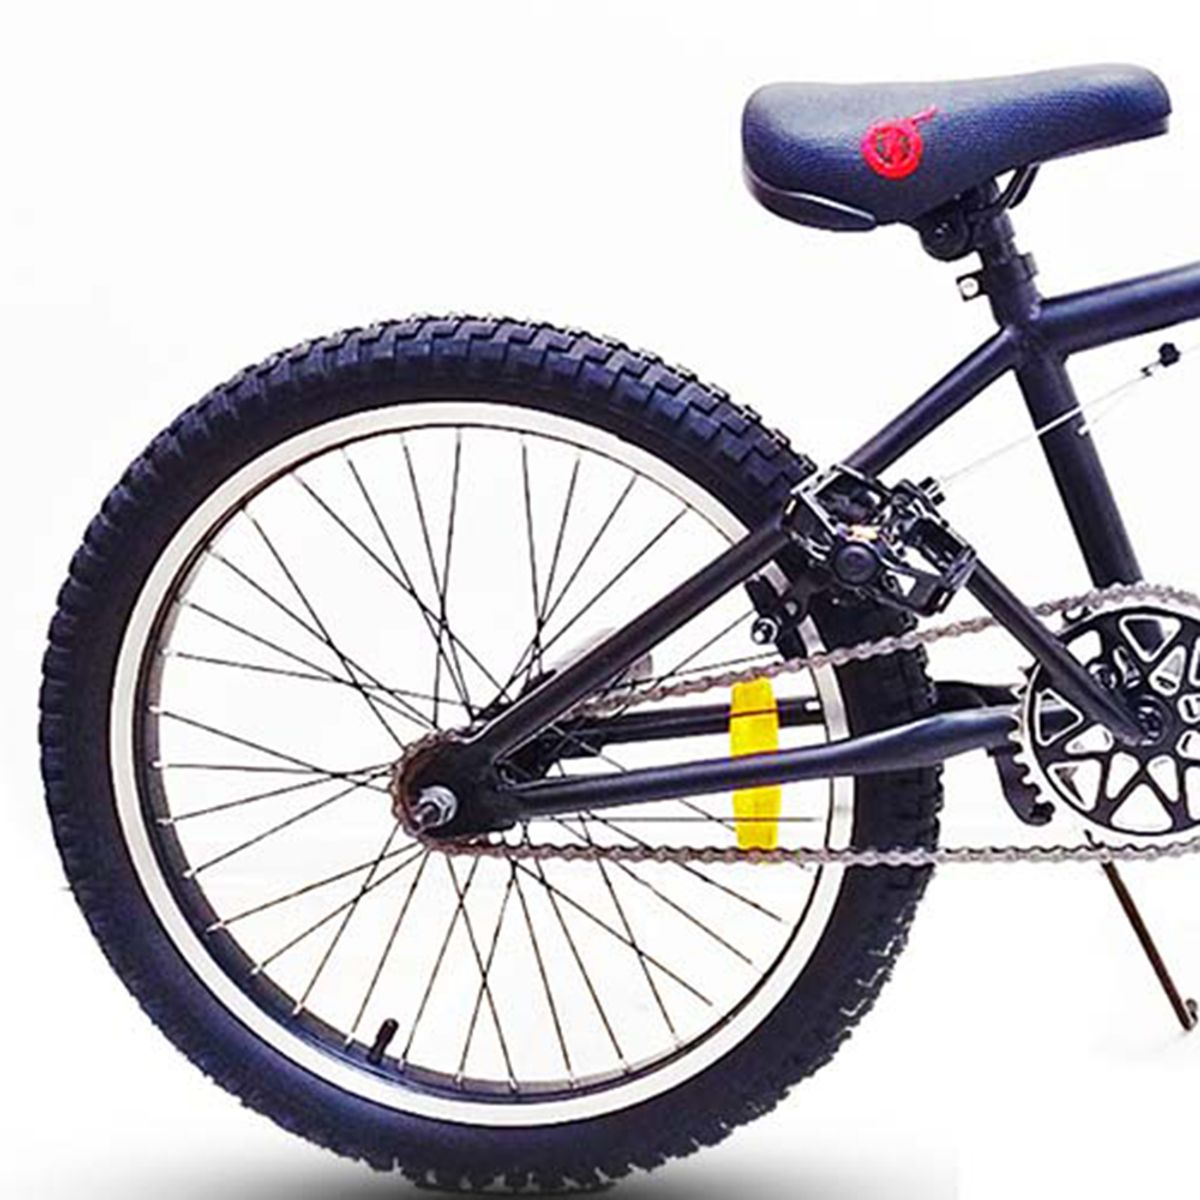 Bicicleta Mountain BMX 20 Negra